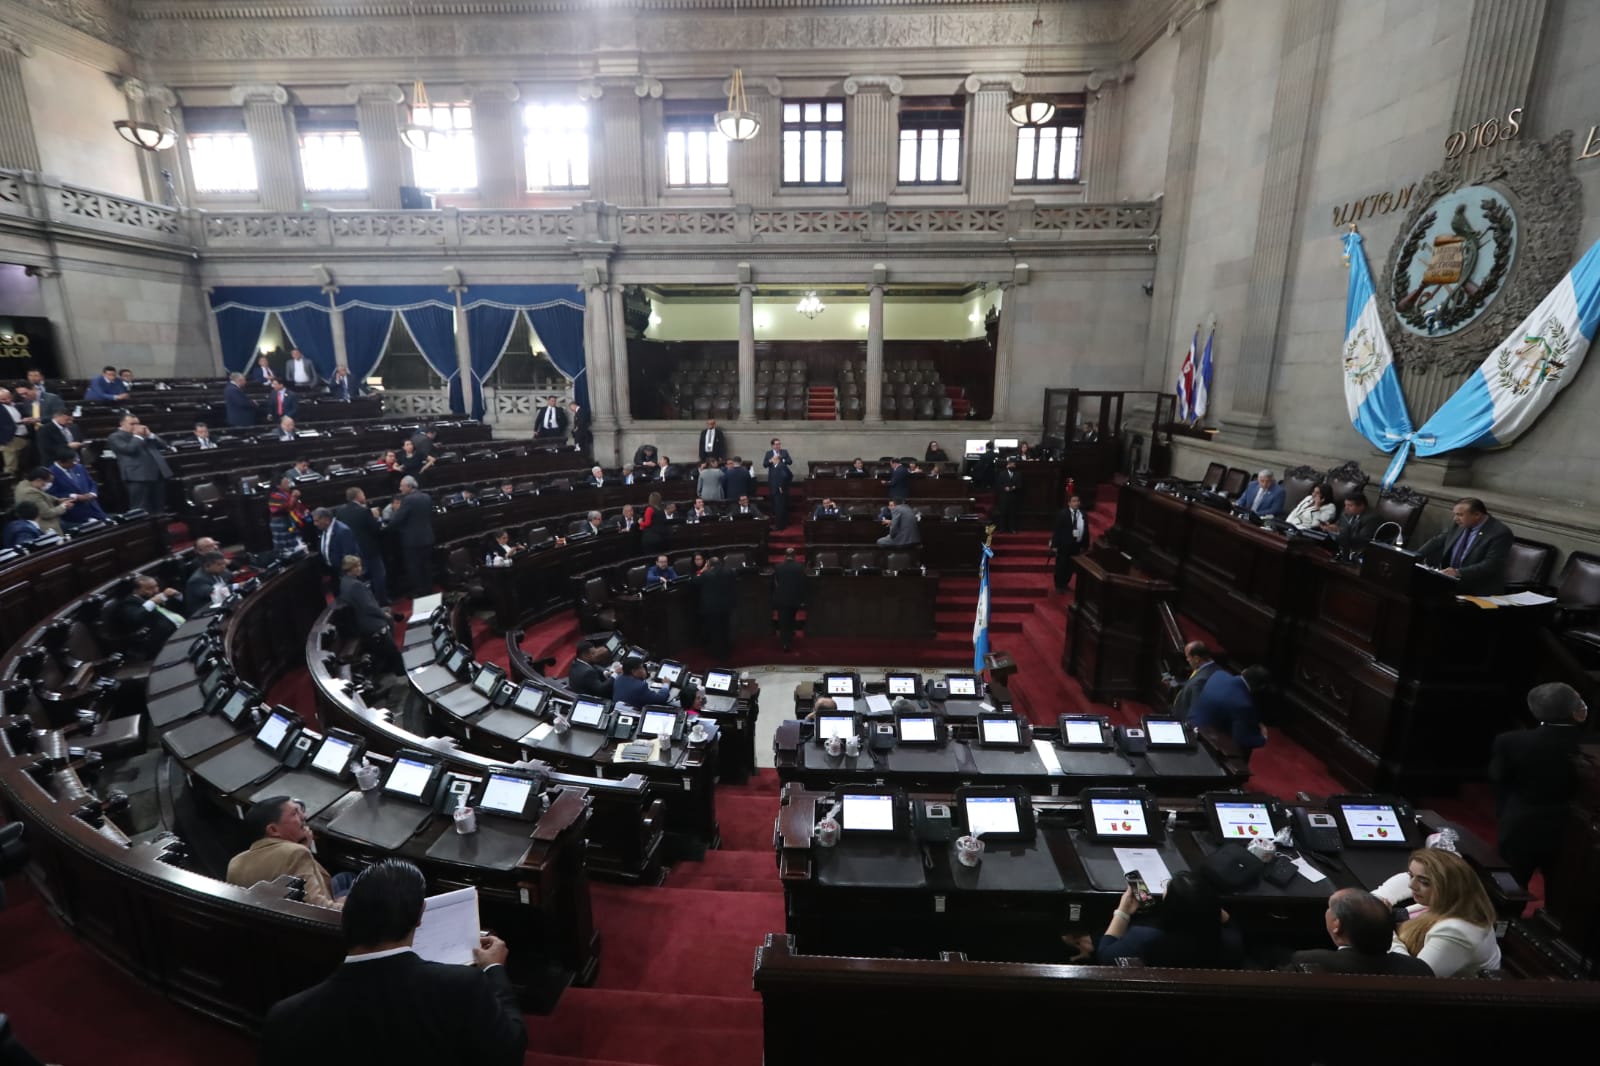 El pleno del Congreso deberá conocer la propuesta de ley para aplicar el indulto presidencial como parte del mecanismo para reactivar la pena de muerte en Guatemala. (Foto Prensa Libre: Élmer Vargas)